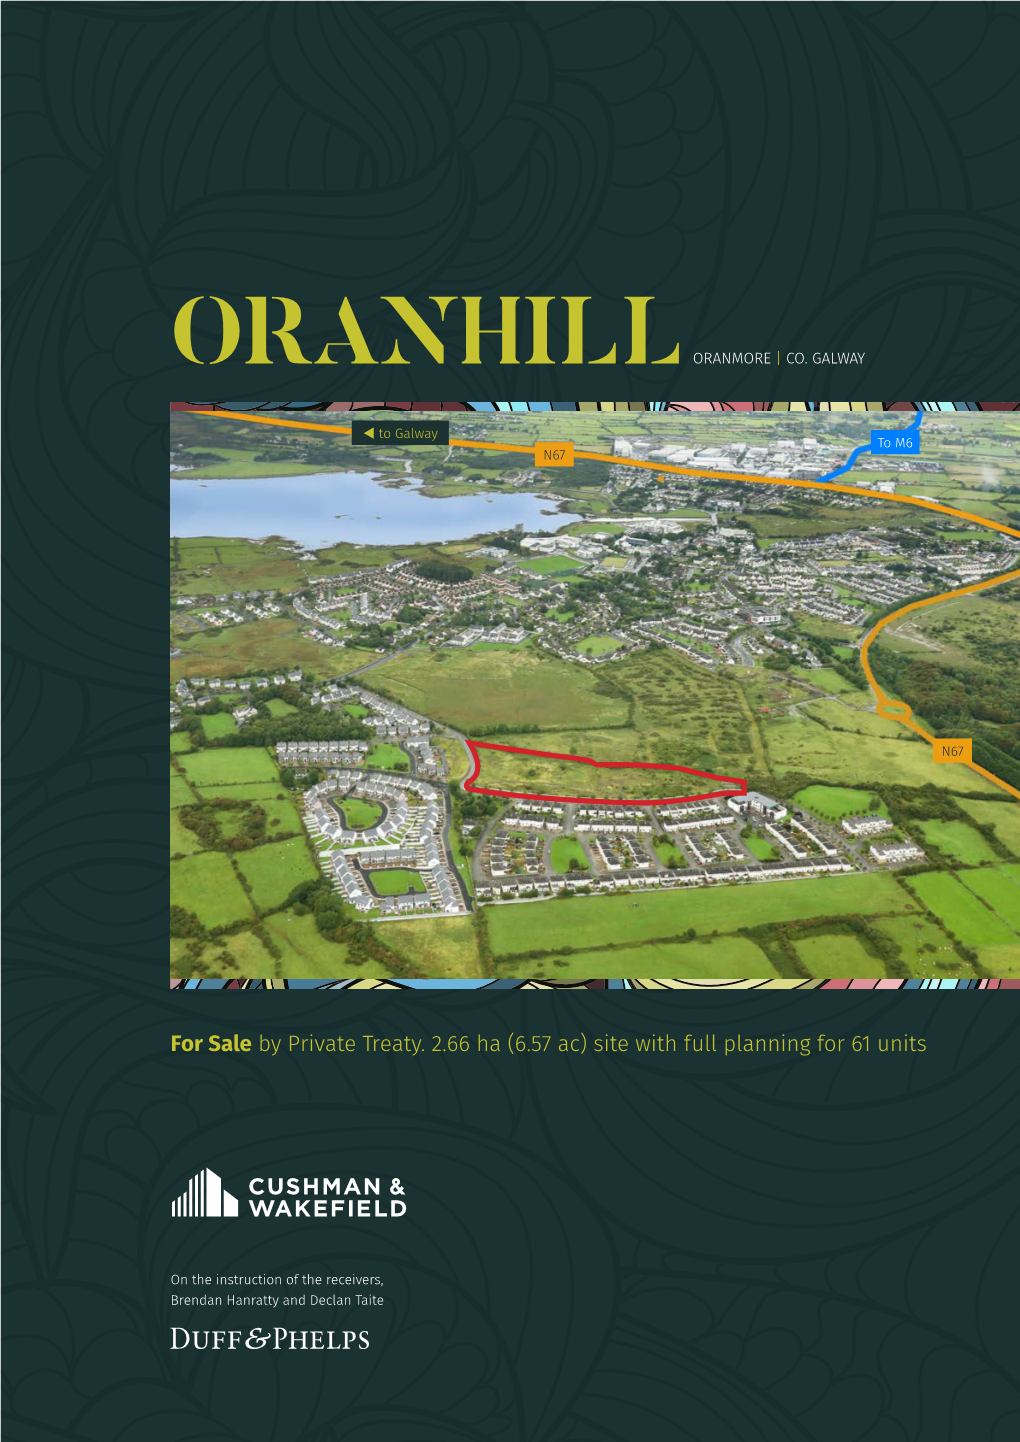 Oranhill Oranmore | Co